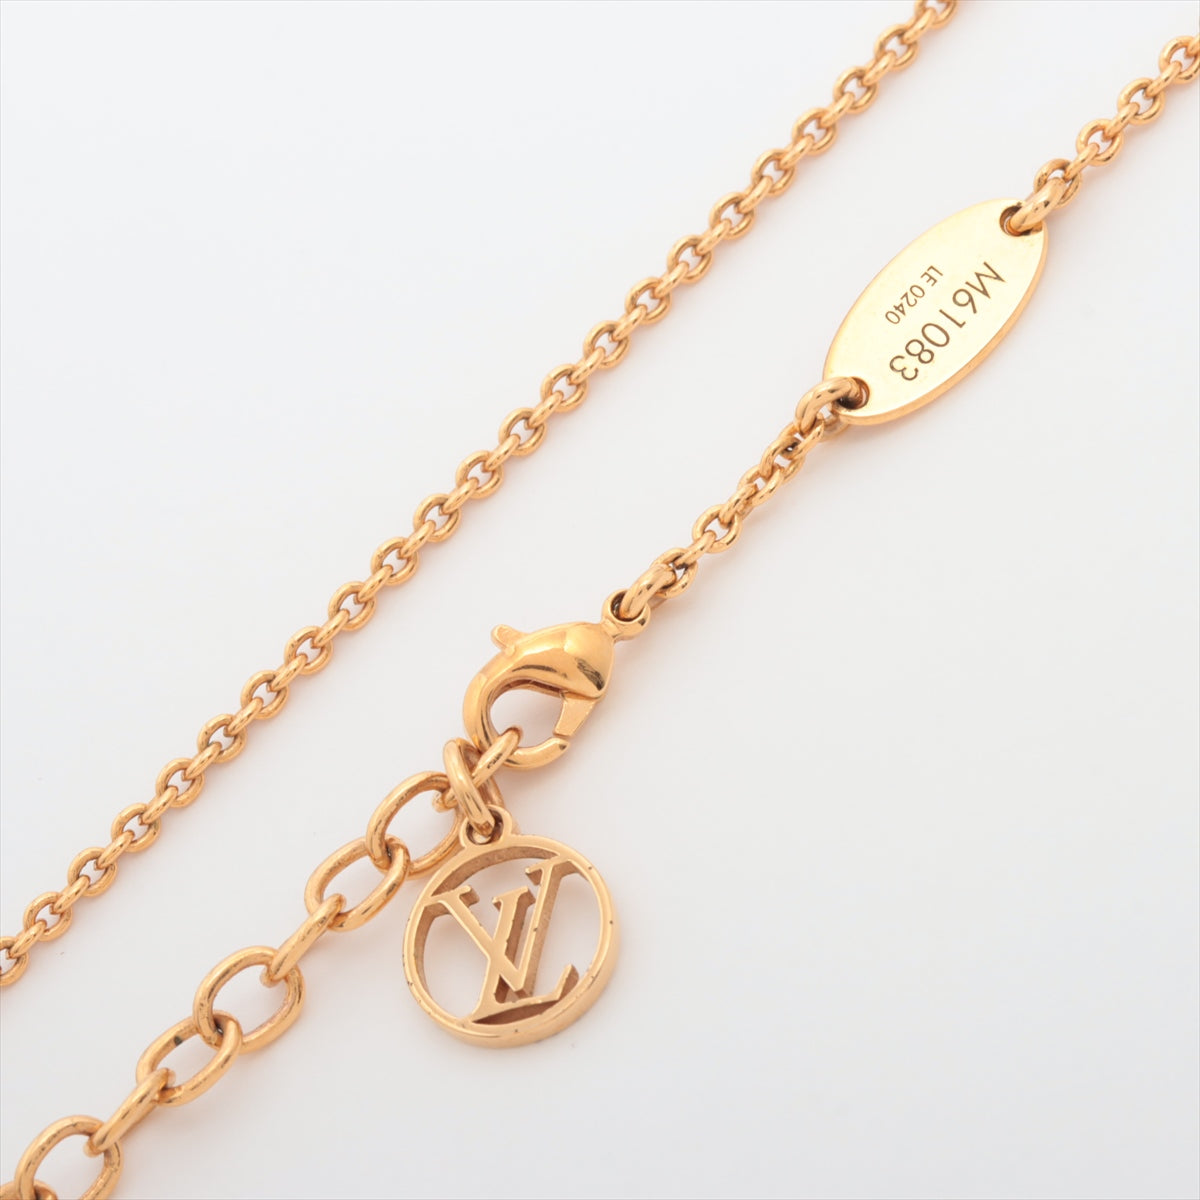 Louis Vuitton Essential V Gold Necklace - THE PURSE AFFAIR